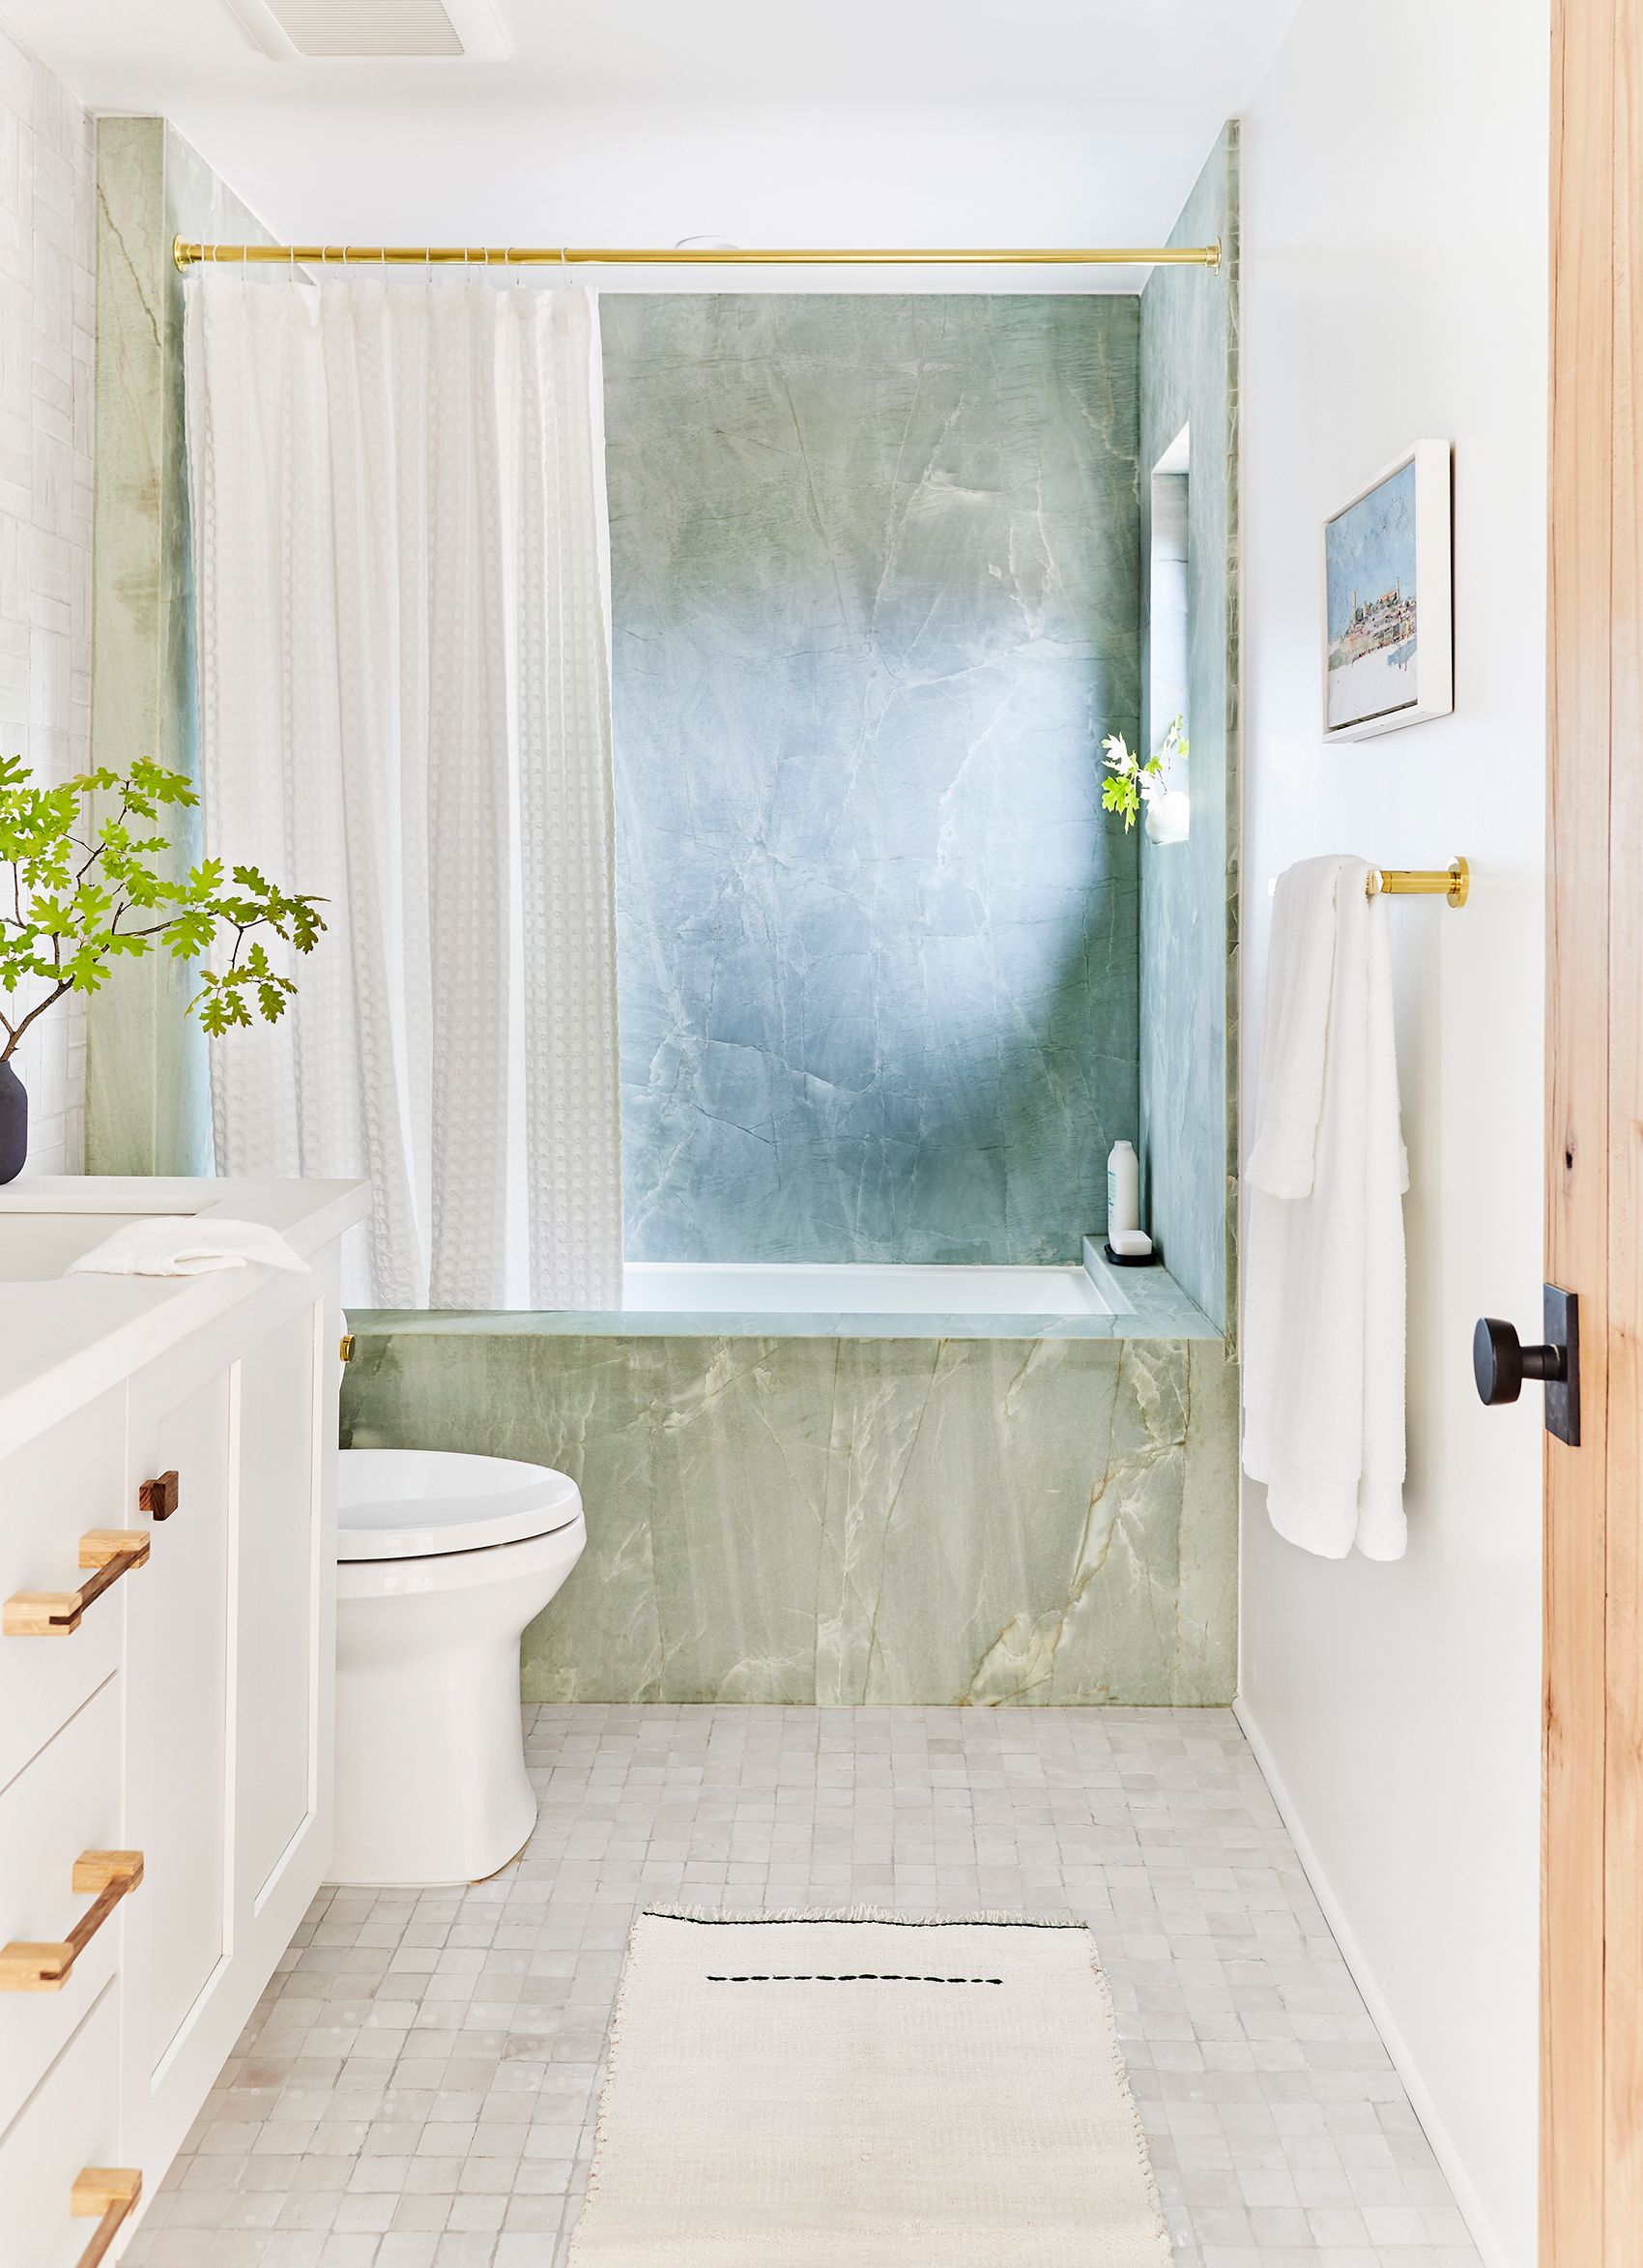 48 Bathroom Tile Ideas Bath, Bathroom Tile Designs For Small Bathrooms